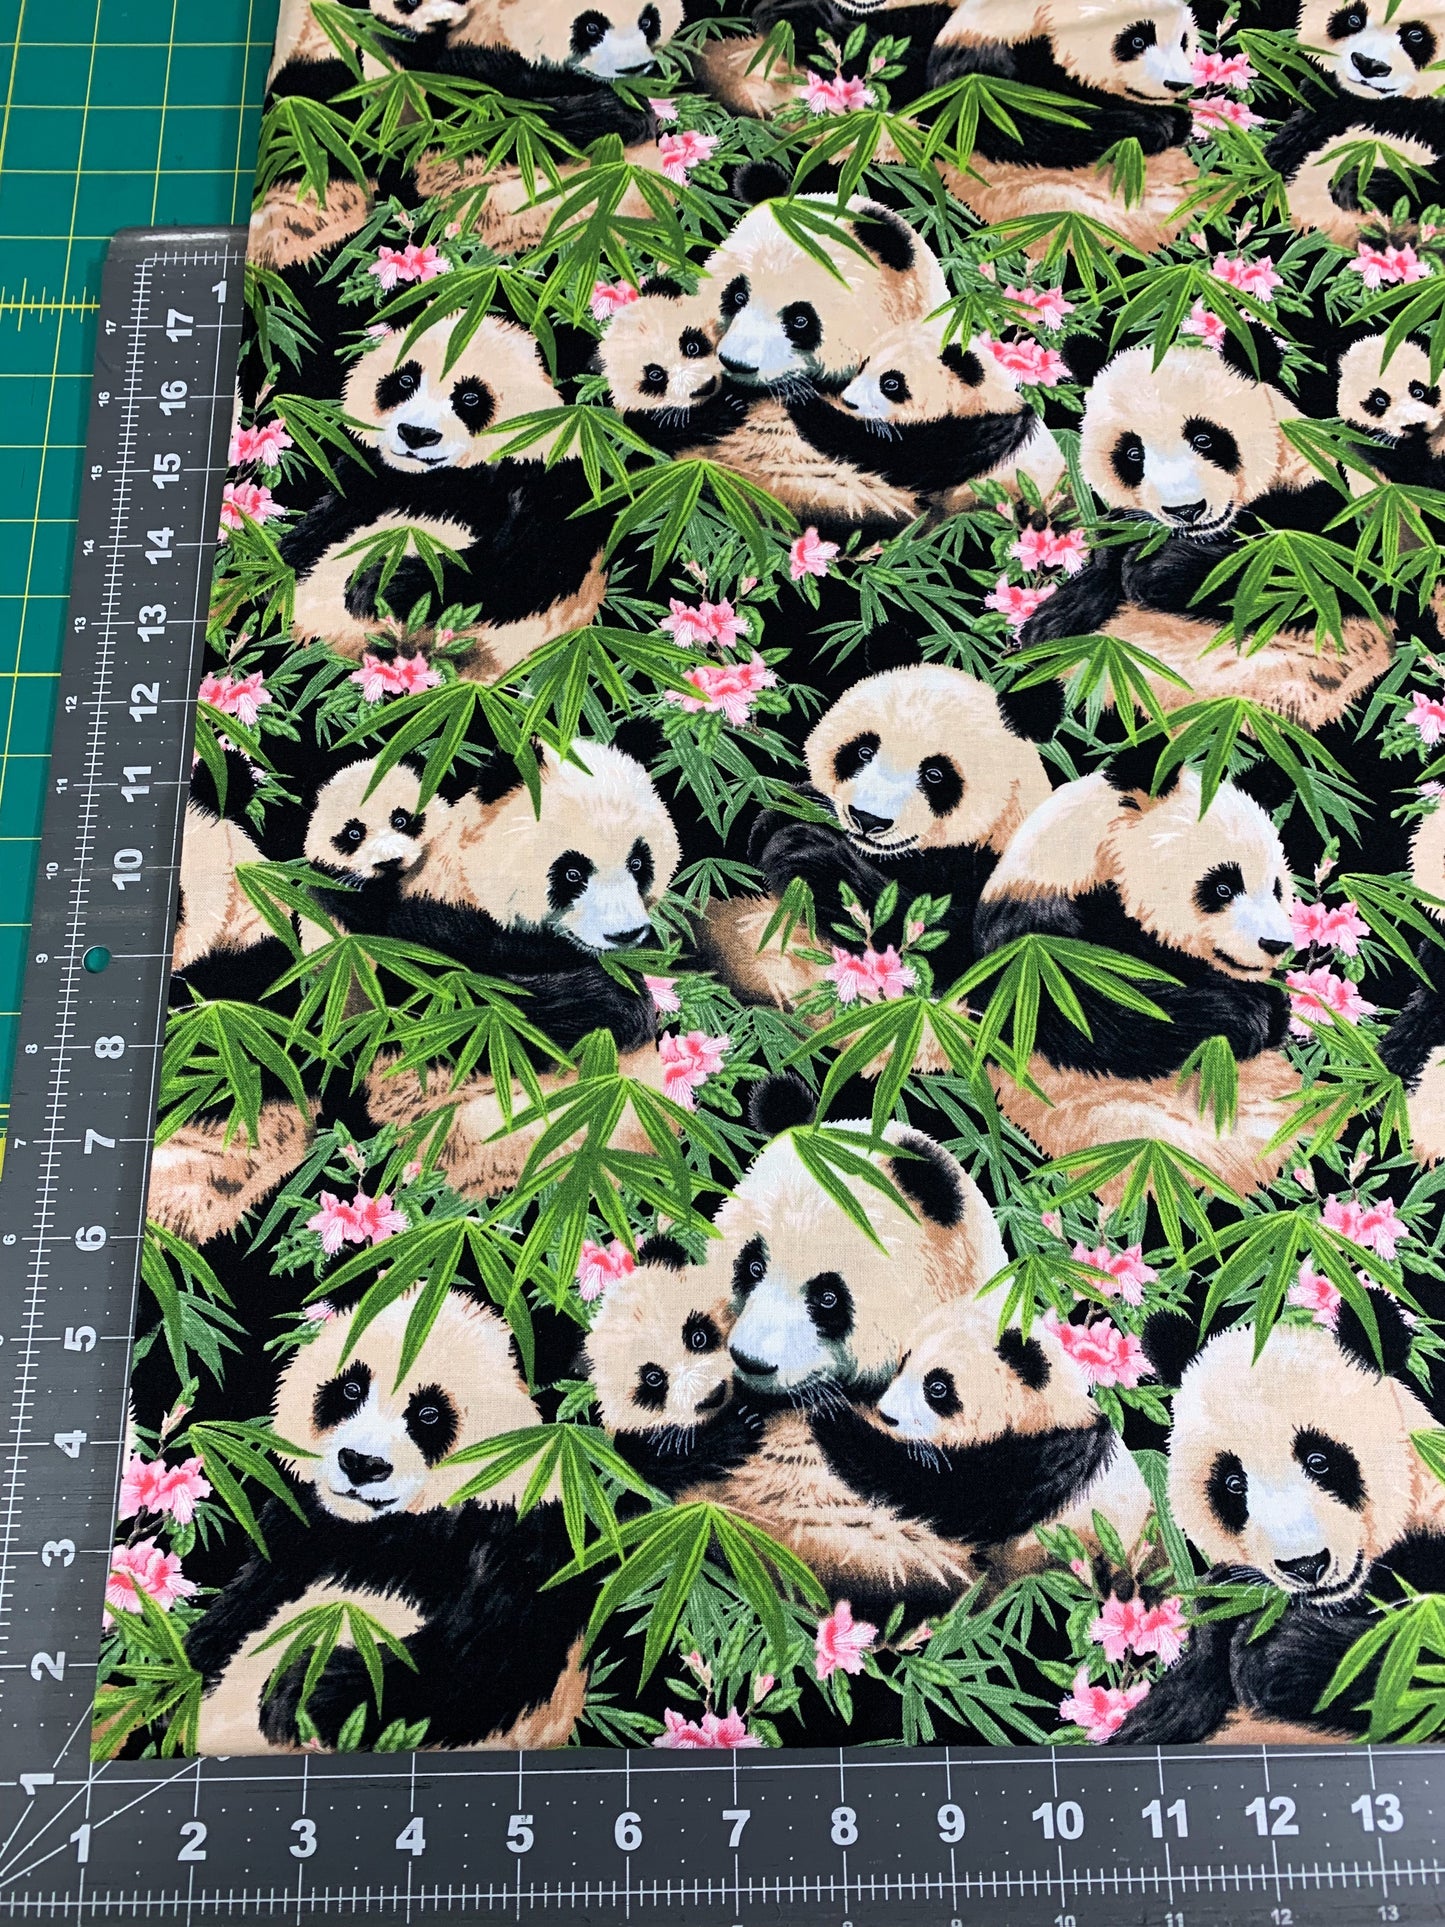 Panda bear fabric 1230 Panda fabric w Pink Flowers